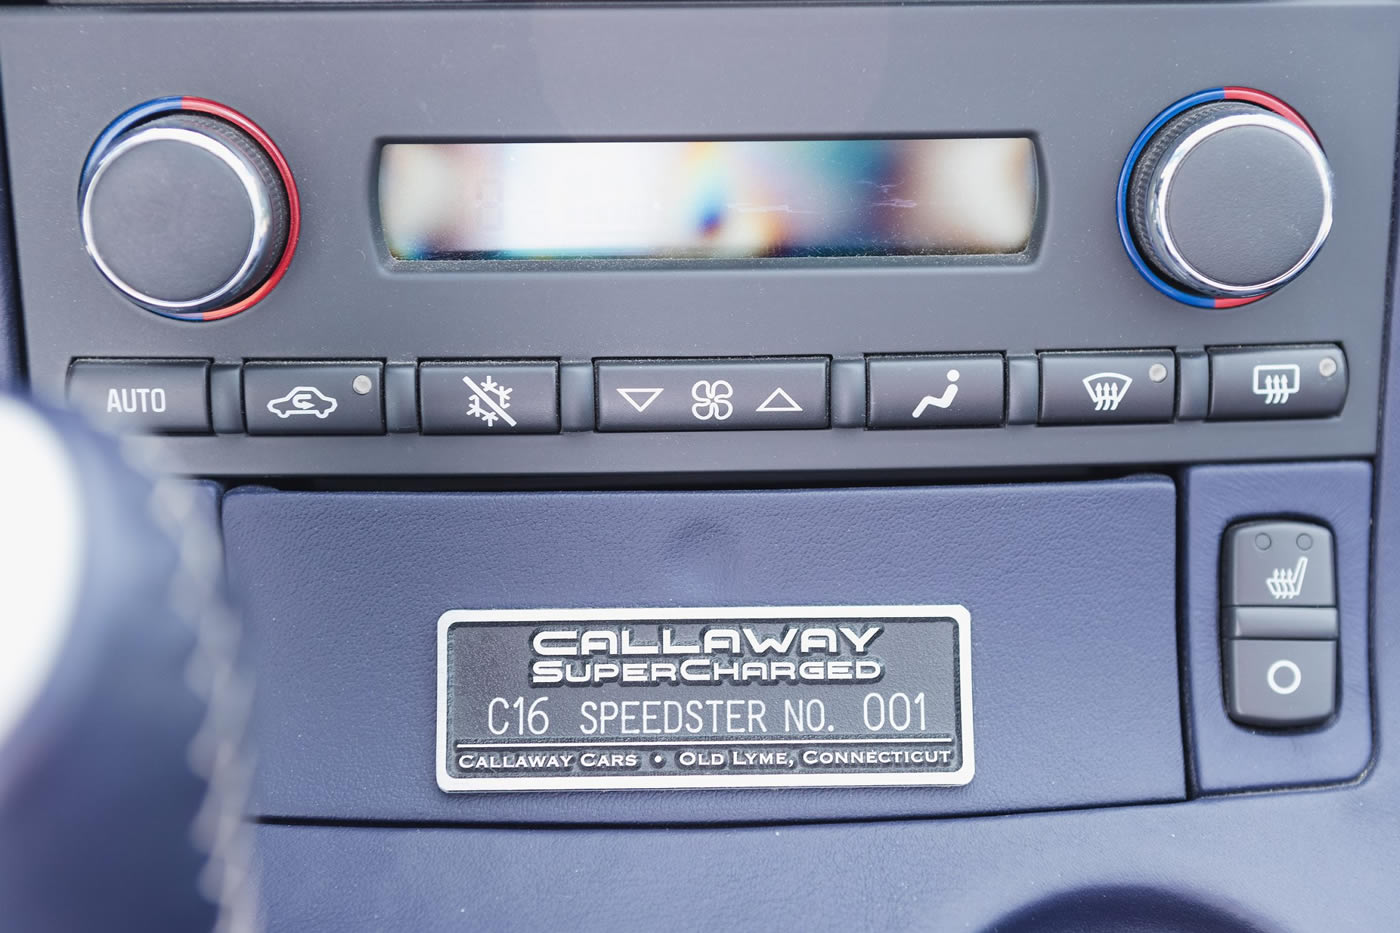 2007 Callaway C16 Speedster